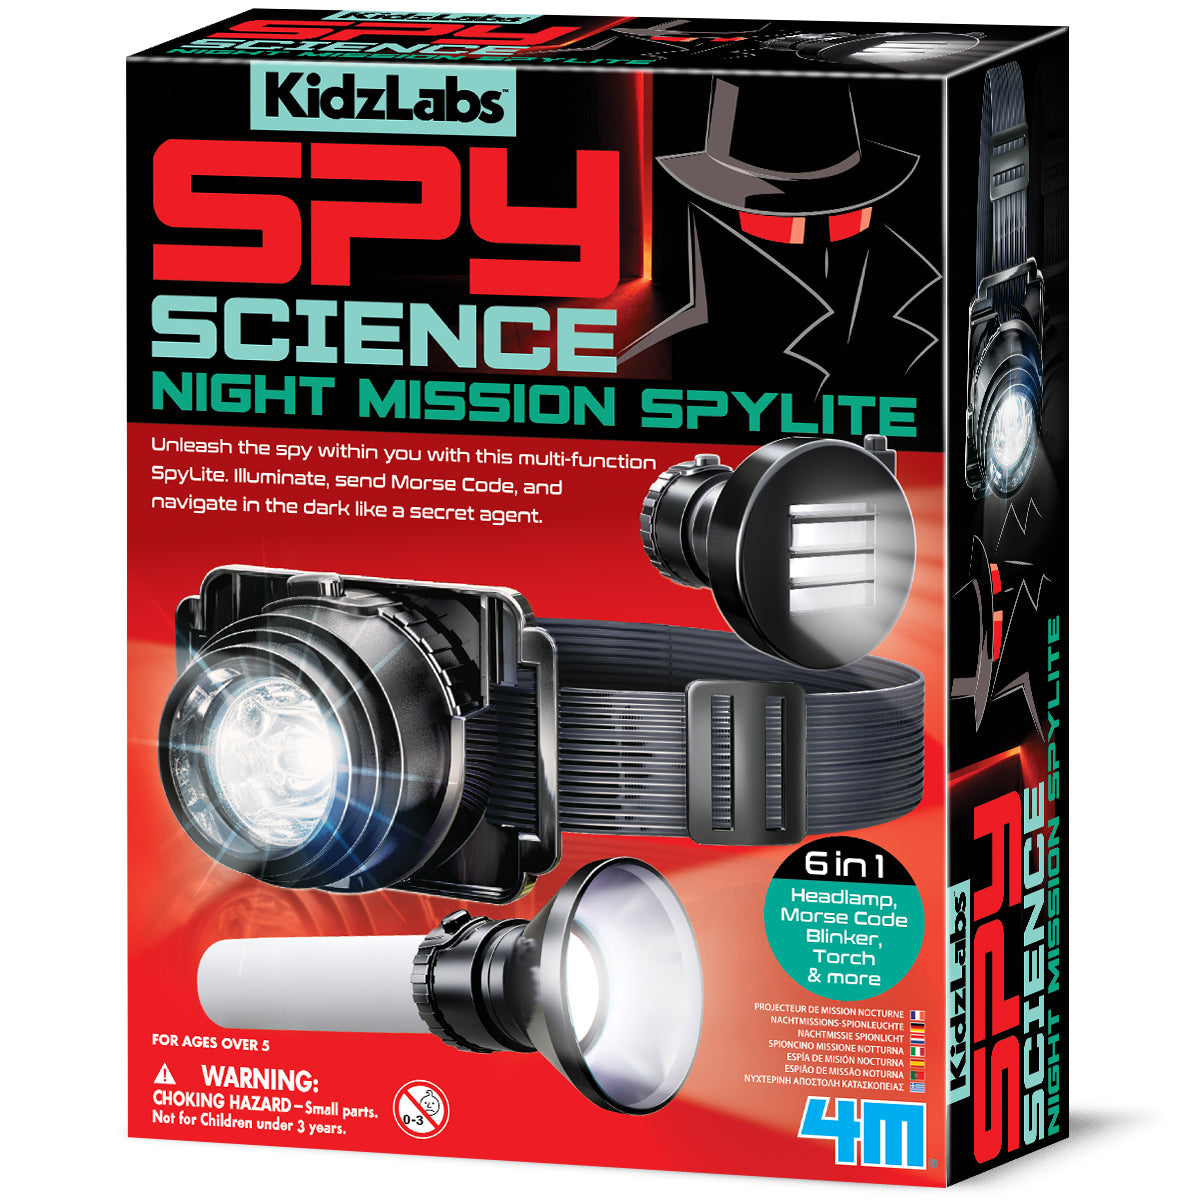 Night Mission Spylite